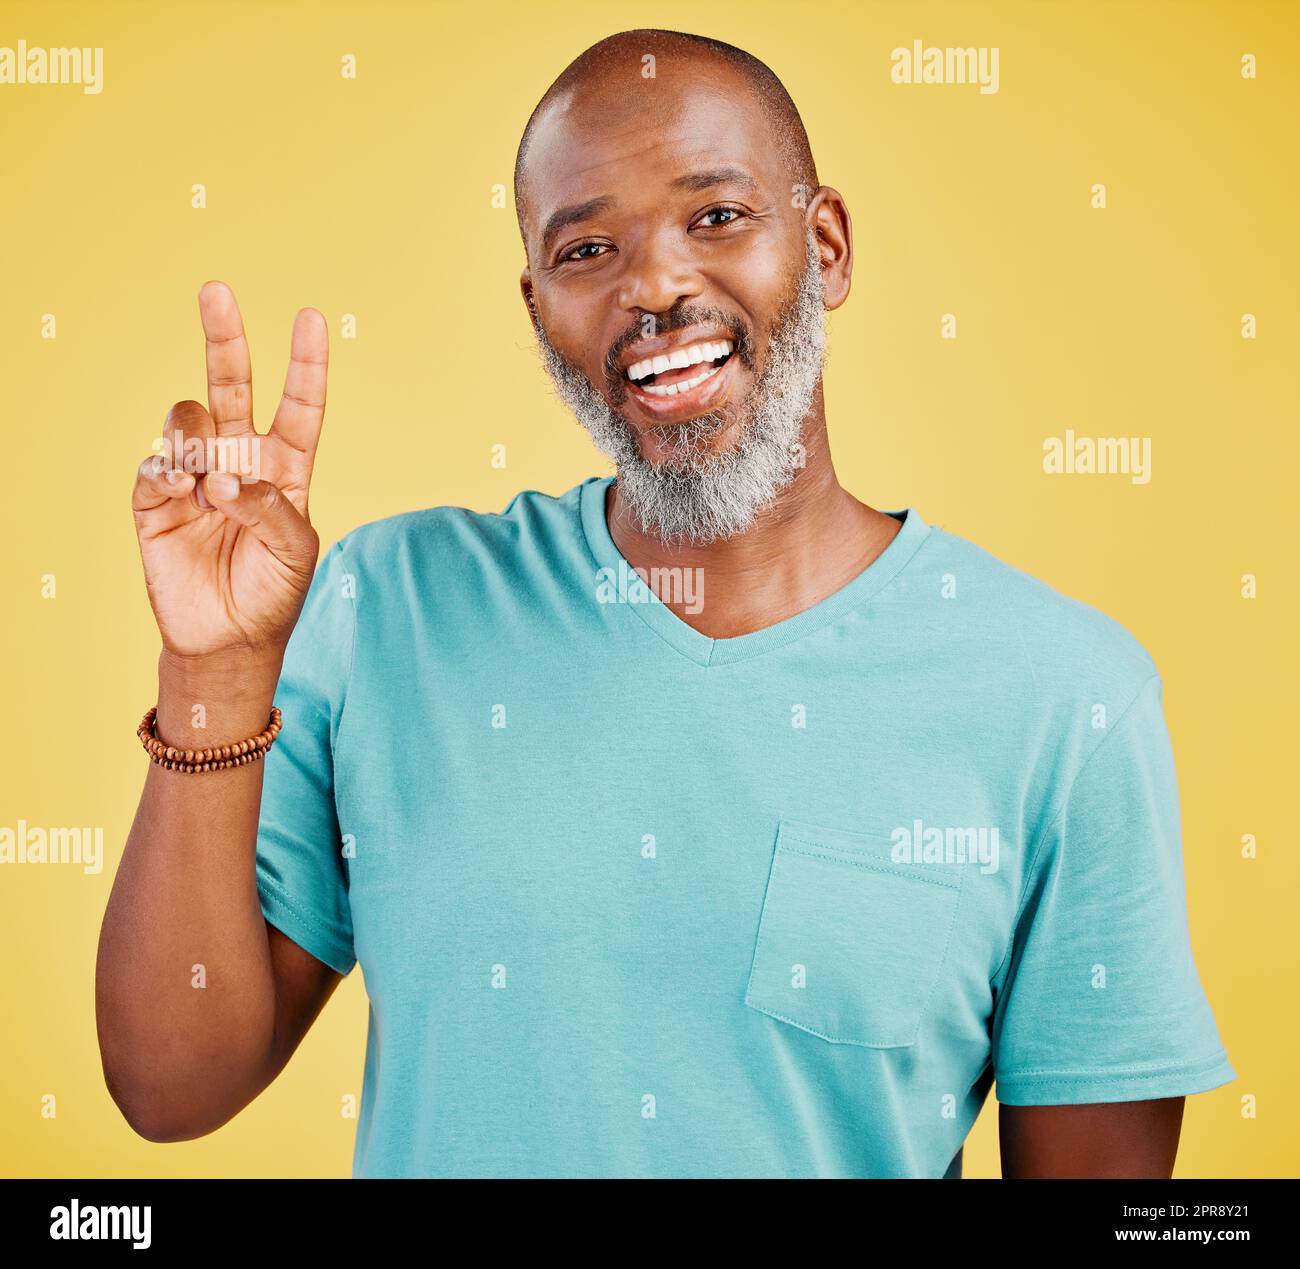 Portrait d'un homme afro-américain mûr et amical qui a l'air heureux et souriant tout en faisant un geste de paix avec sa main sur un fond jaune de studio. Exprimer que tout est parfait. Affichage du support Banque D'Images